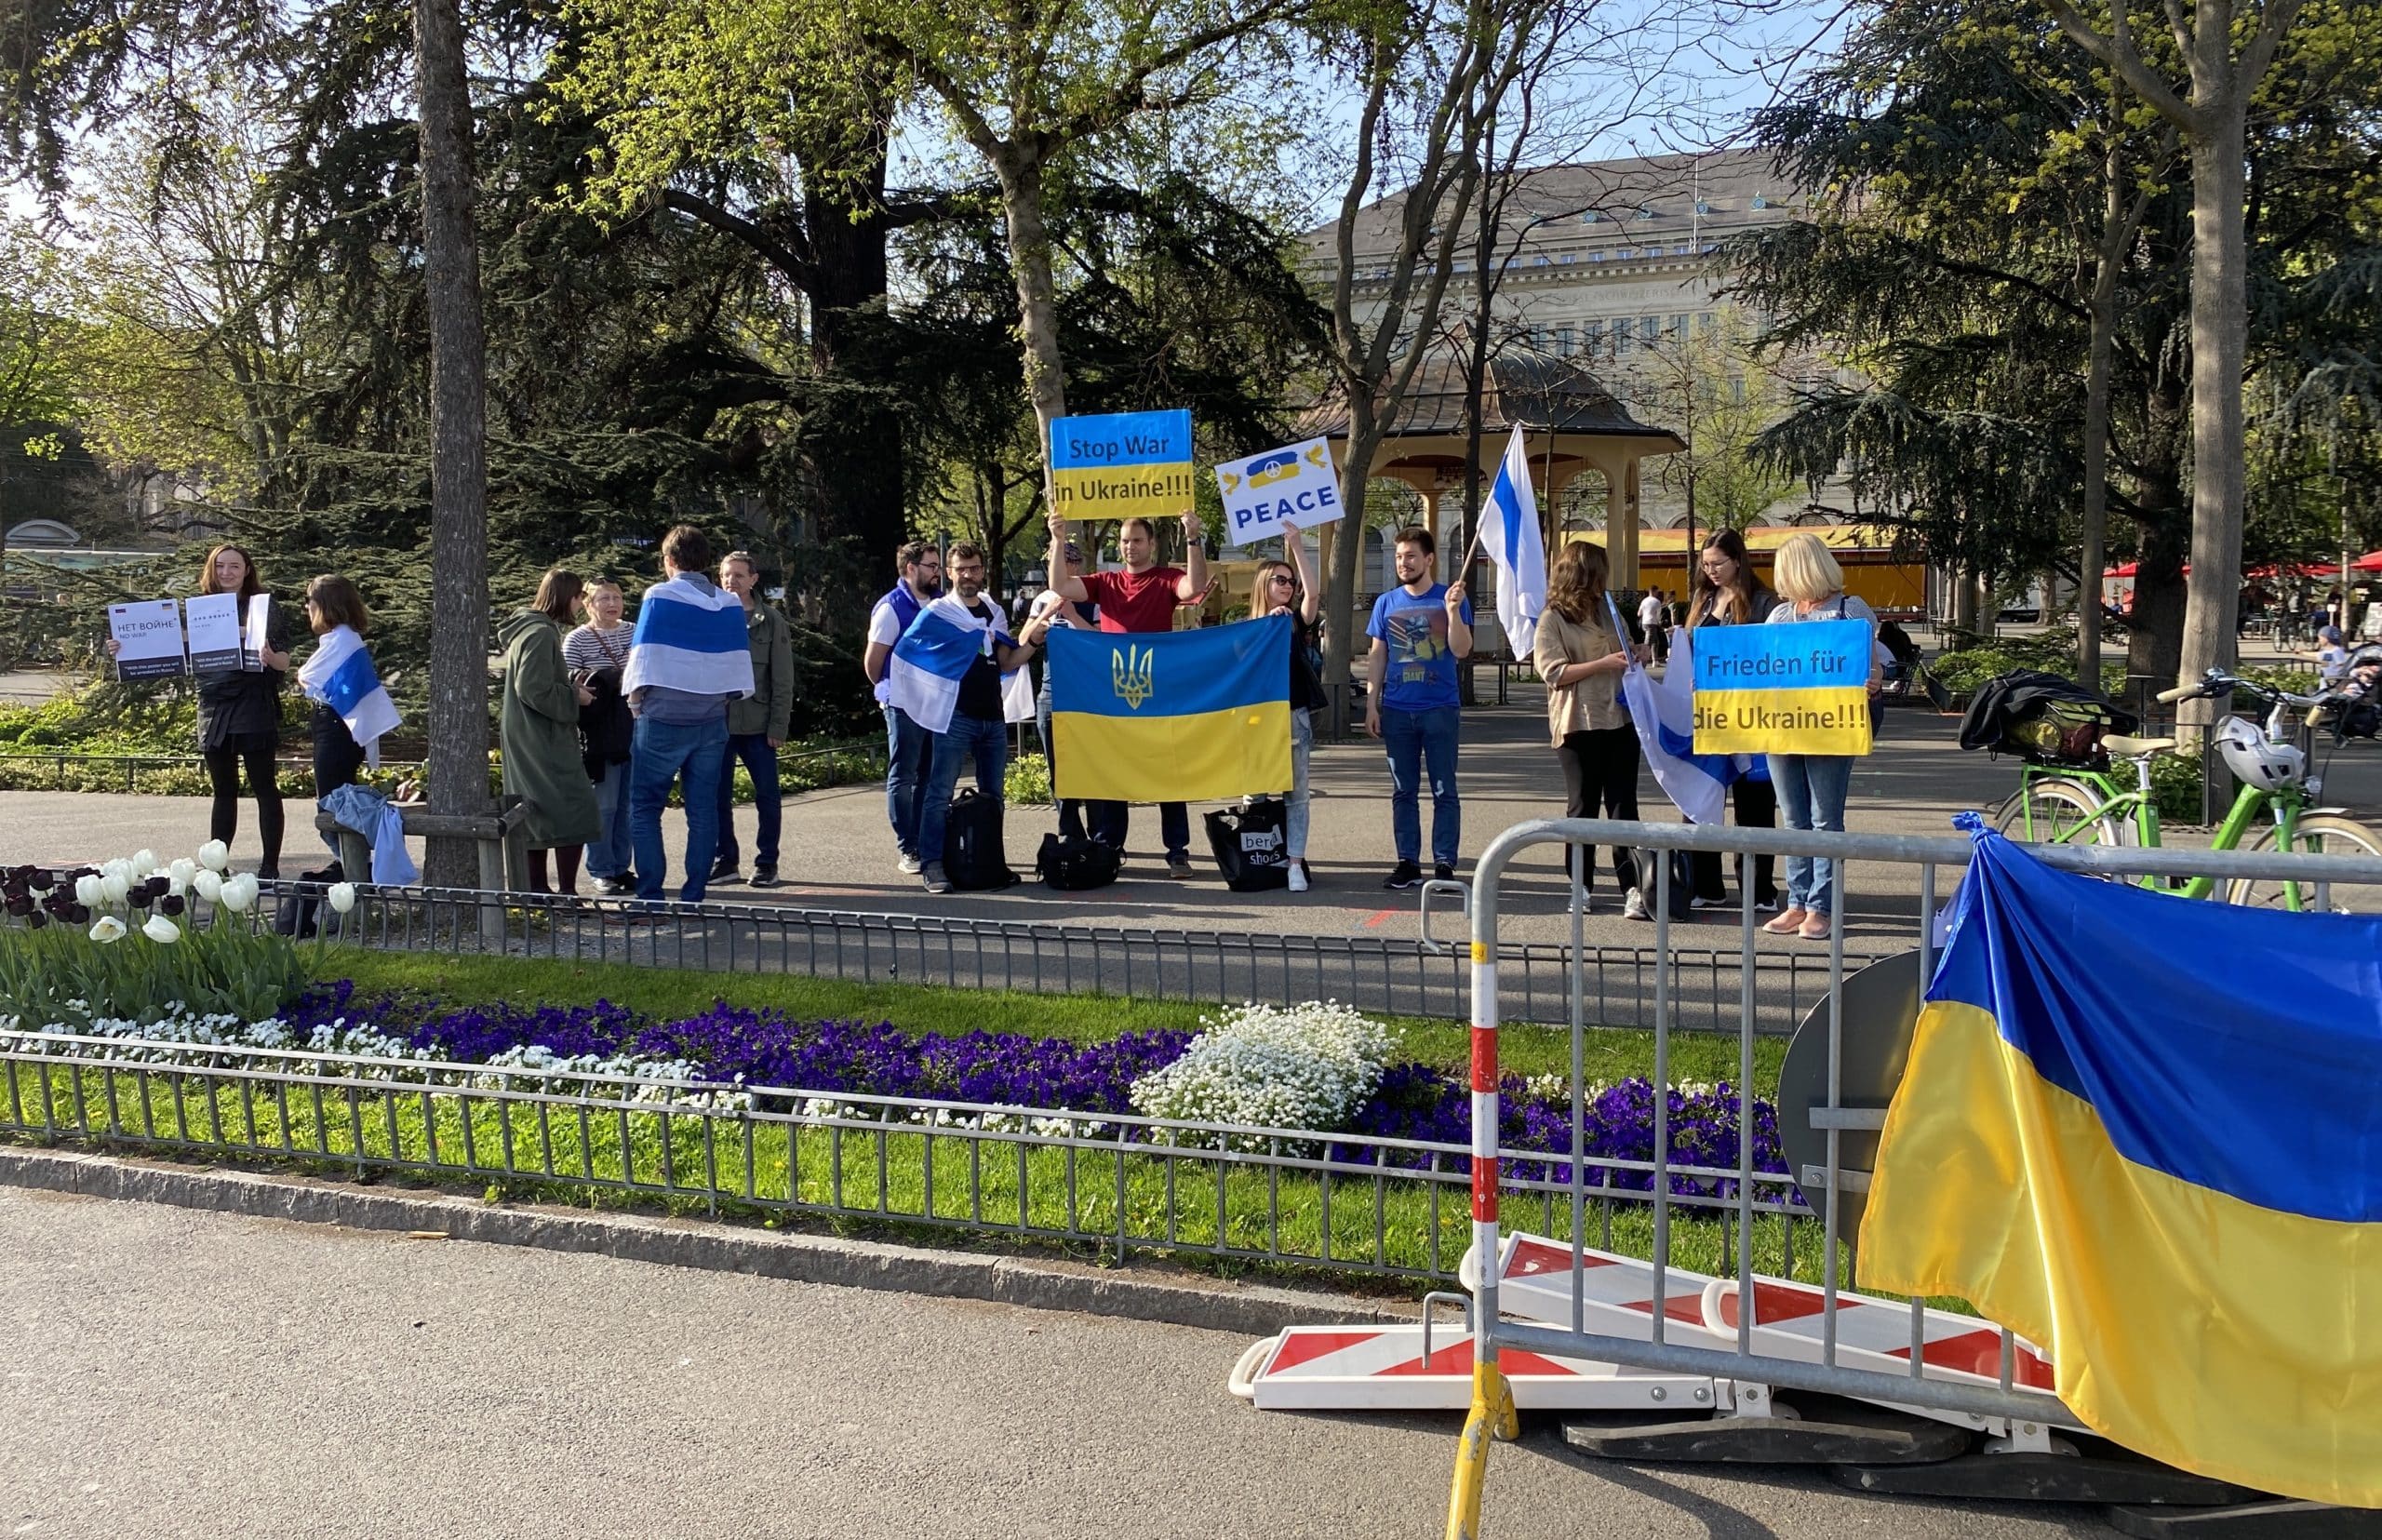 На митинге солидарности с Украиной в Цюрихе. 13 апреля 2022 г. (© schwingen.net)